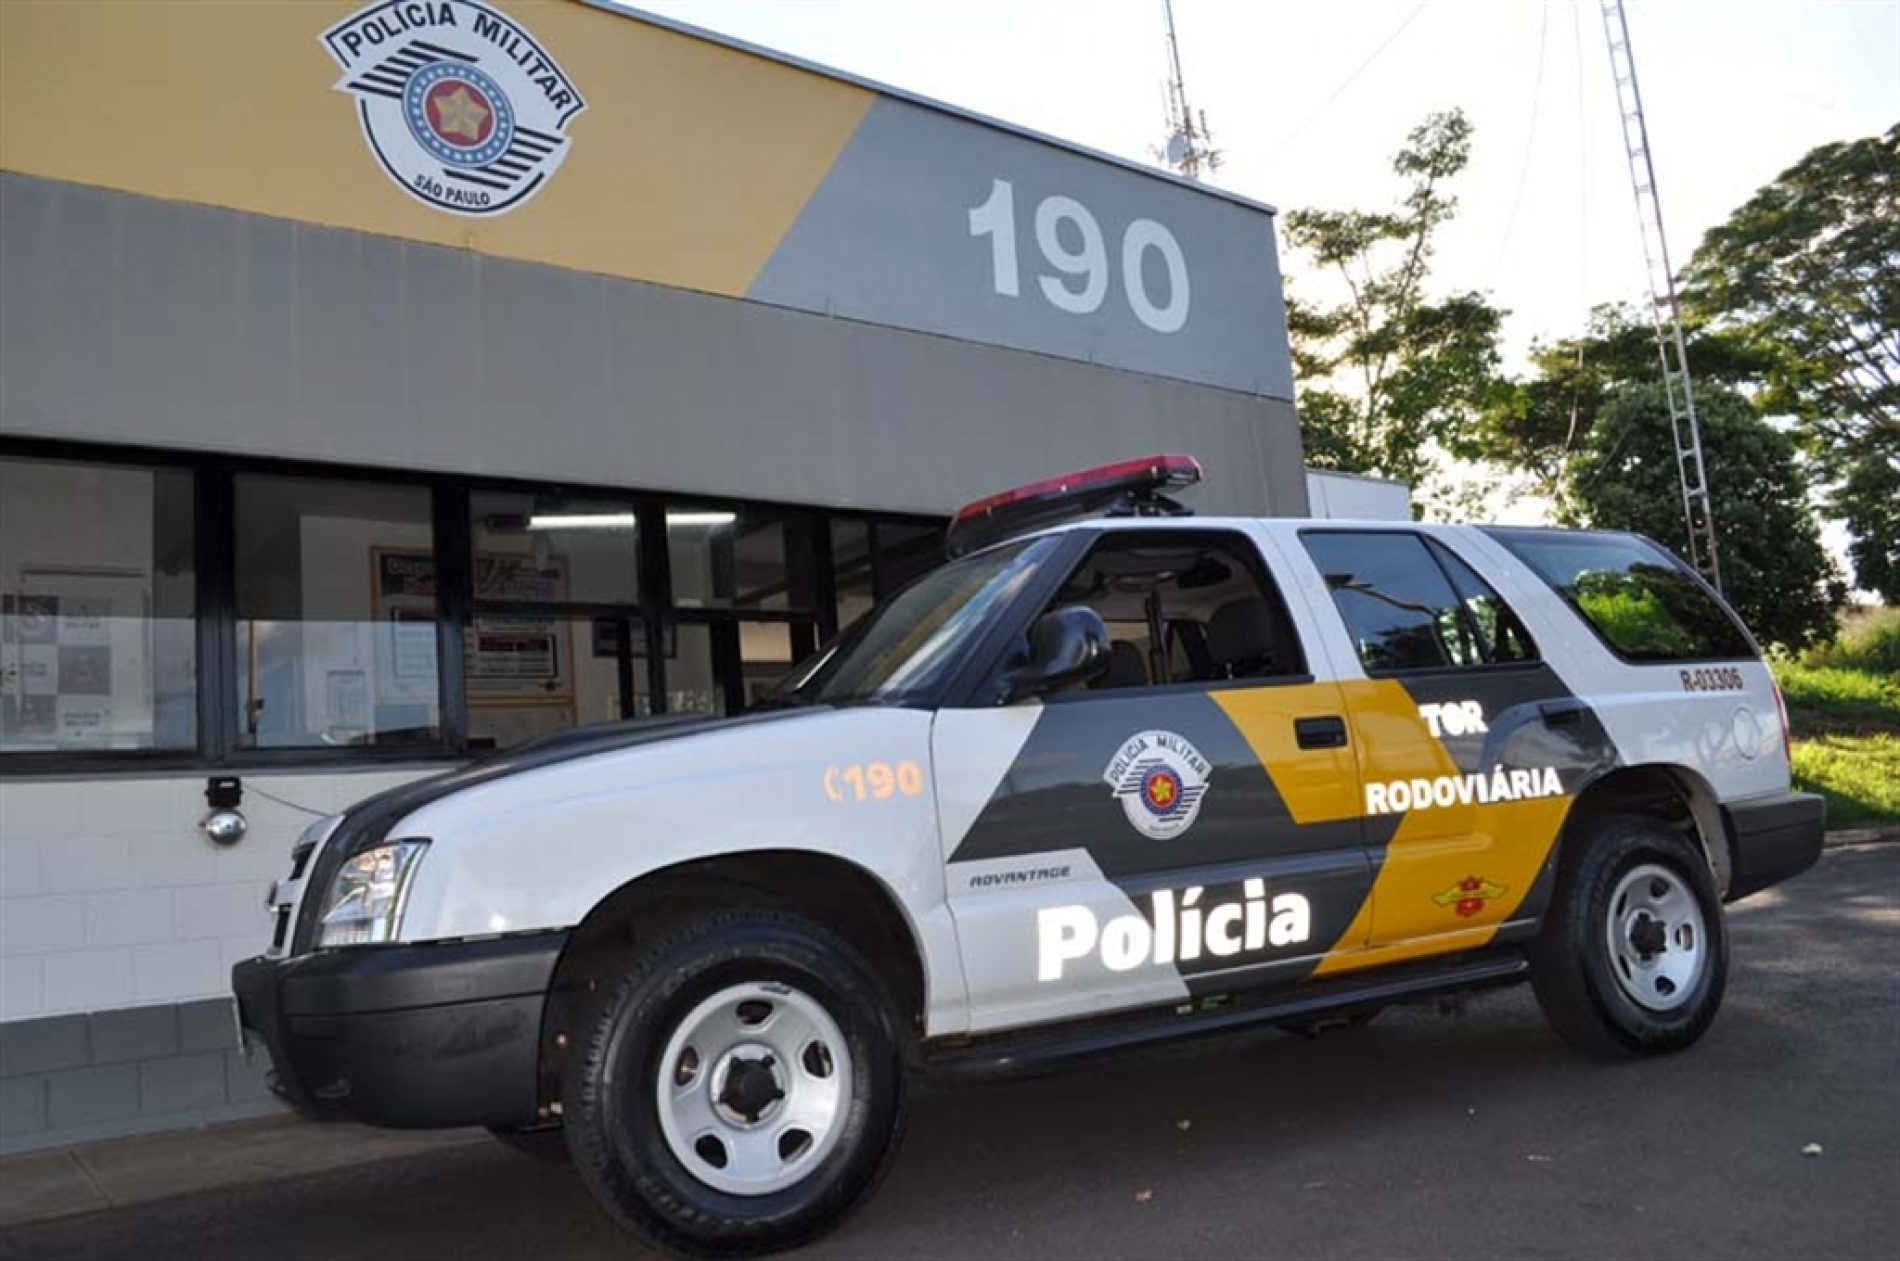 BARRETOS: Policia Rodoviária prende motorista com CNH falsa e porte ilegal de arma de fogo